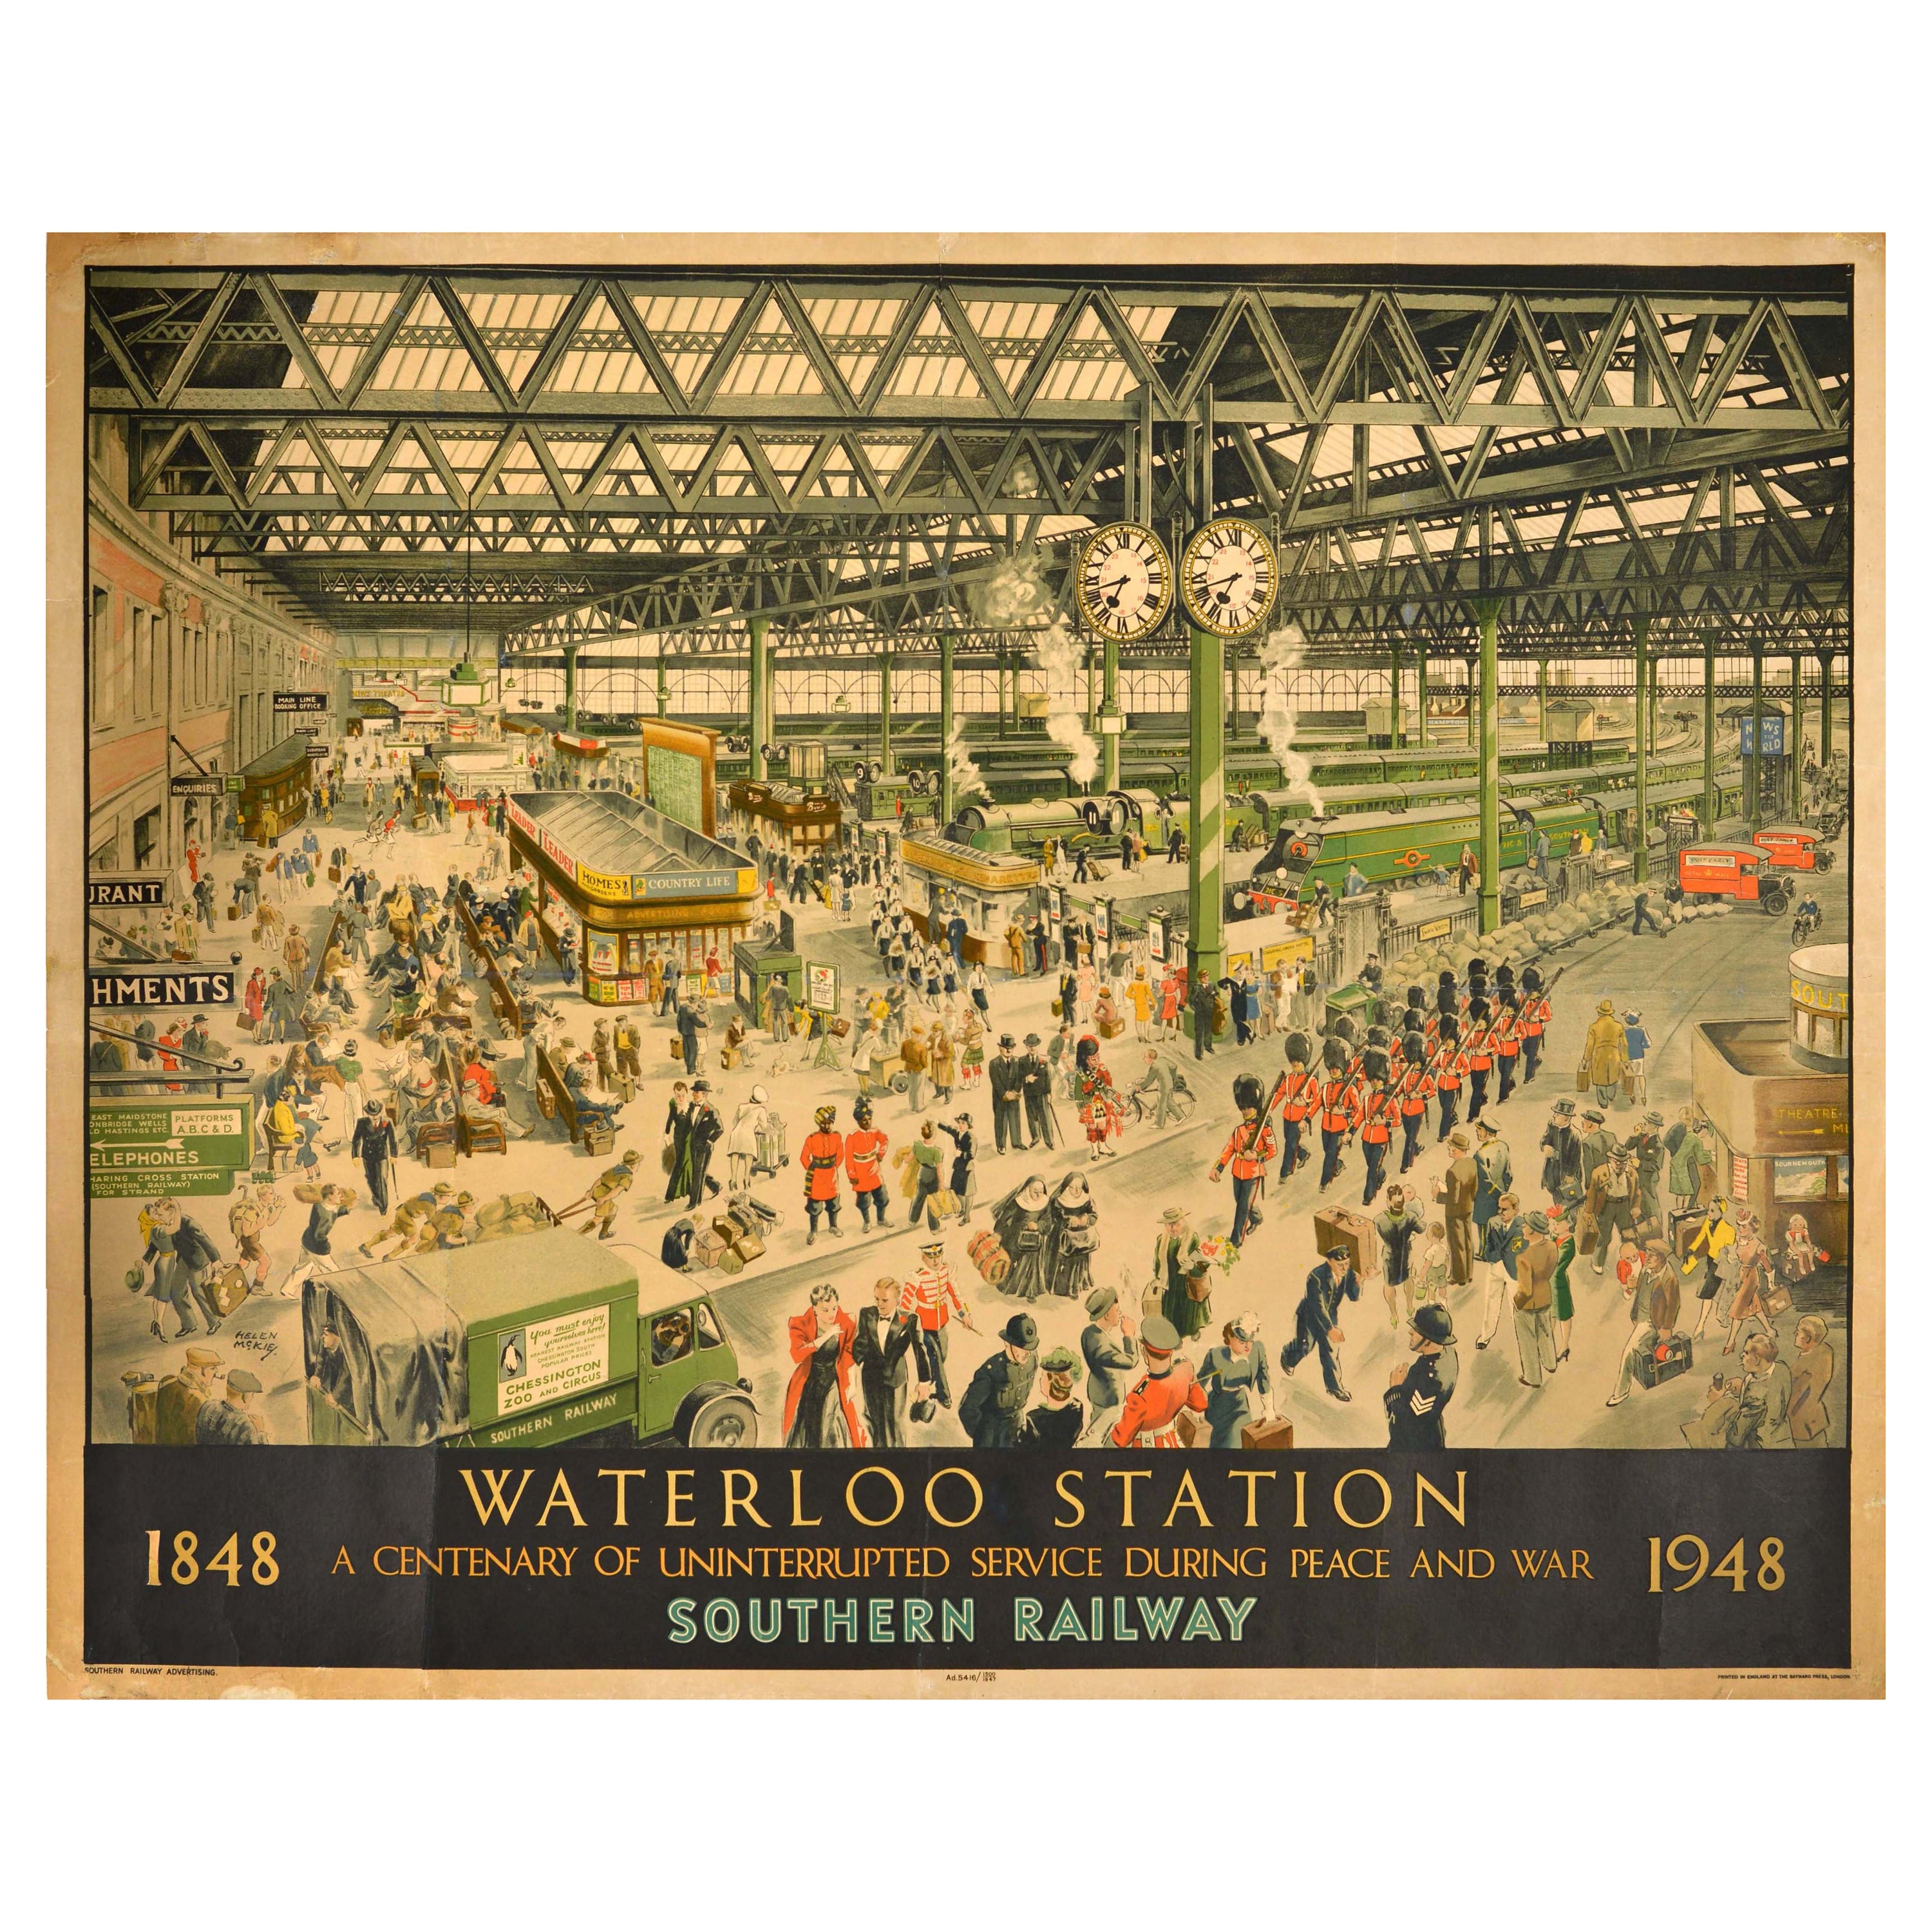 Original-Vintage-Reise-Werbeplakat Waterloo Station Southern Railway